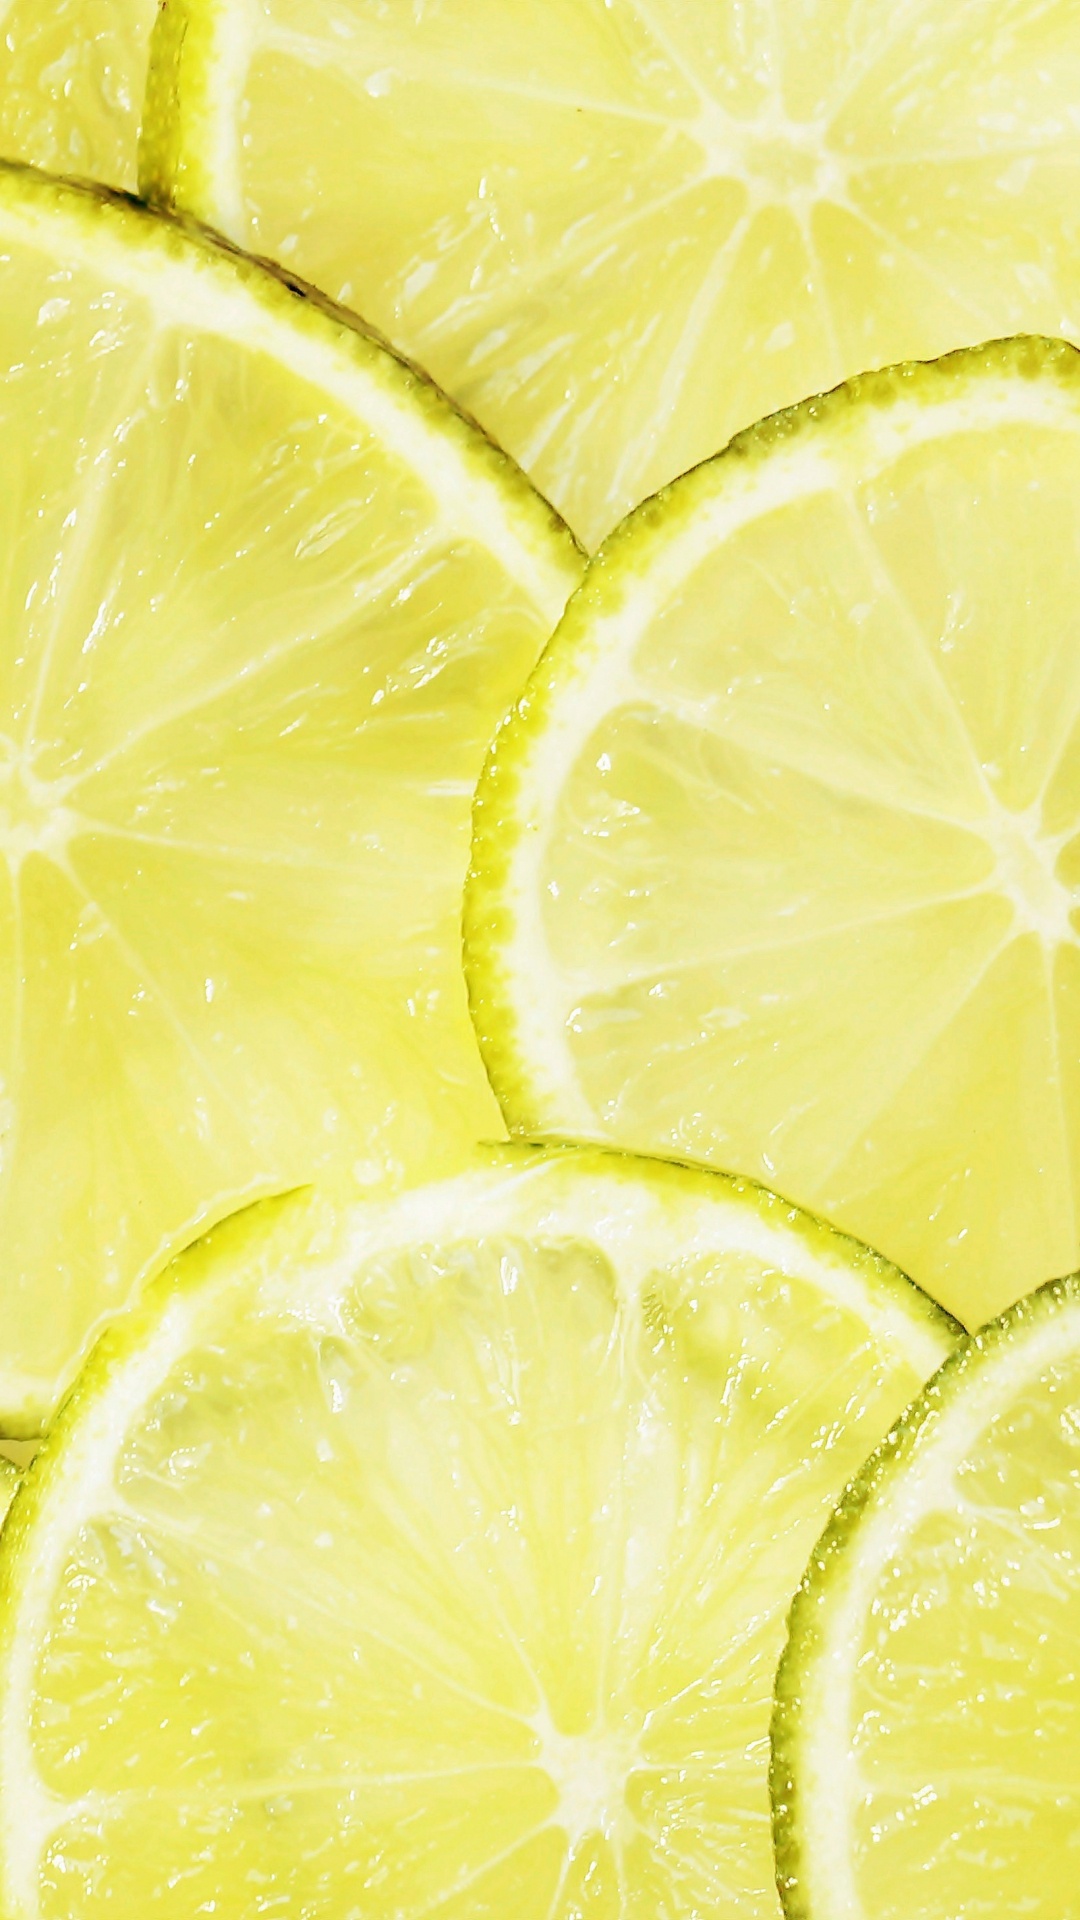 Fruta de Limón Amarillo Con Gotas de Agua. Wallpaper in 1080x1920 Resolution